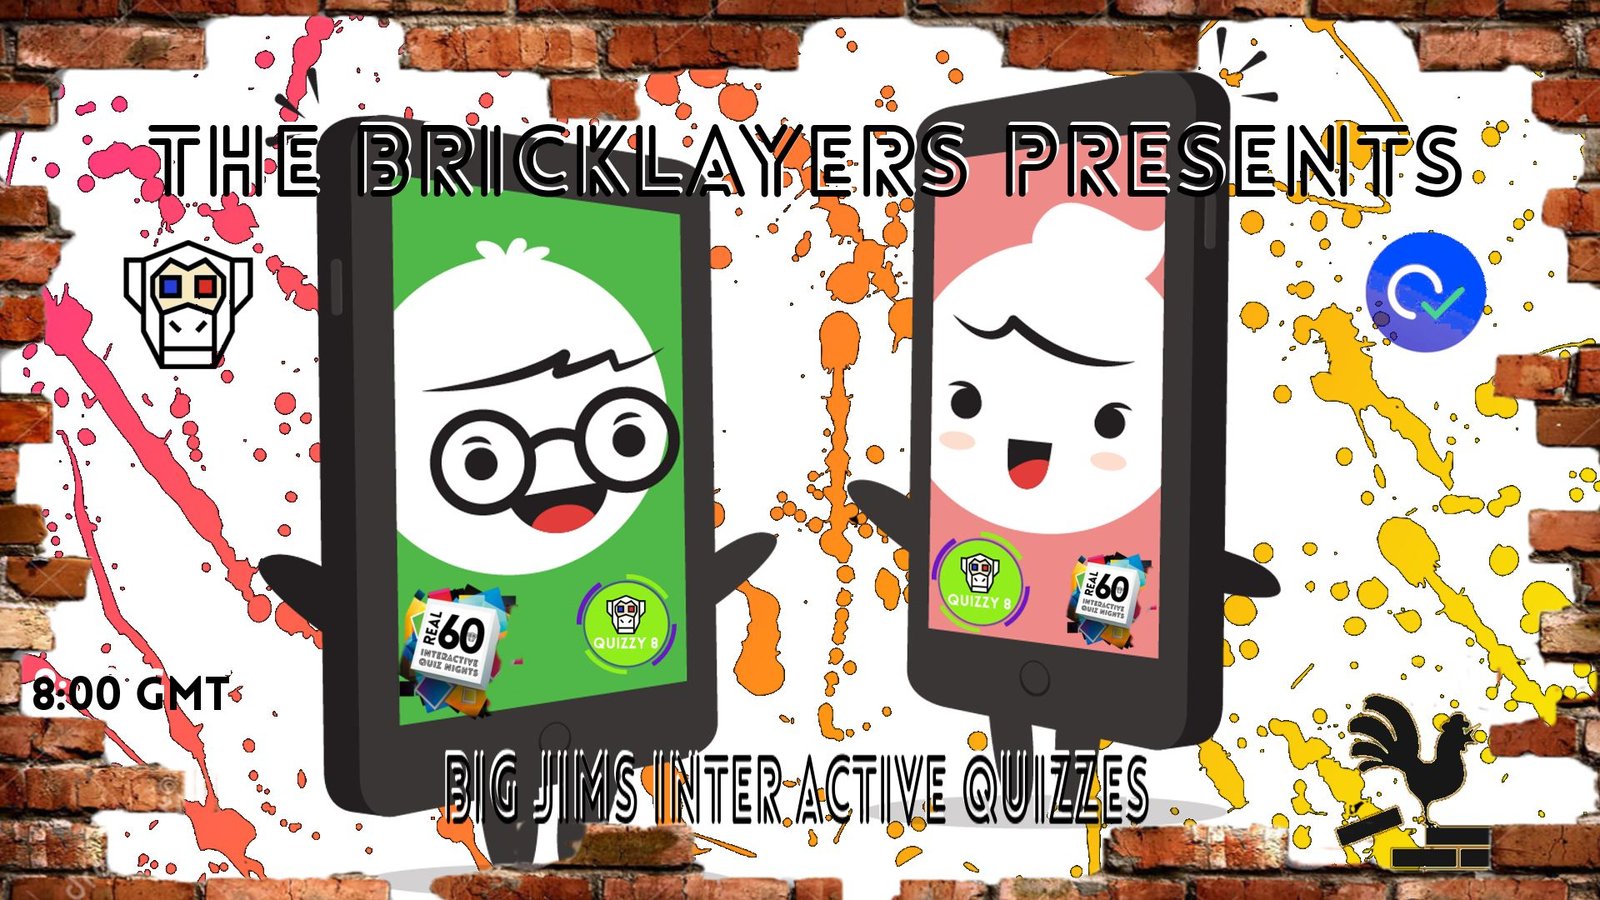 The Bricklayers Presents Big Jims Interactive Pub Quiz.